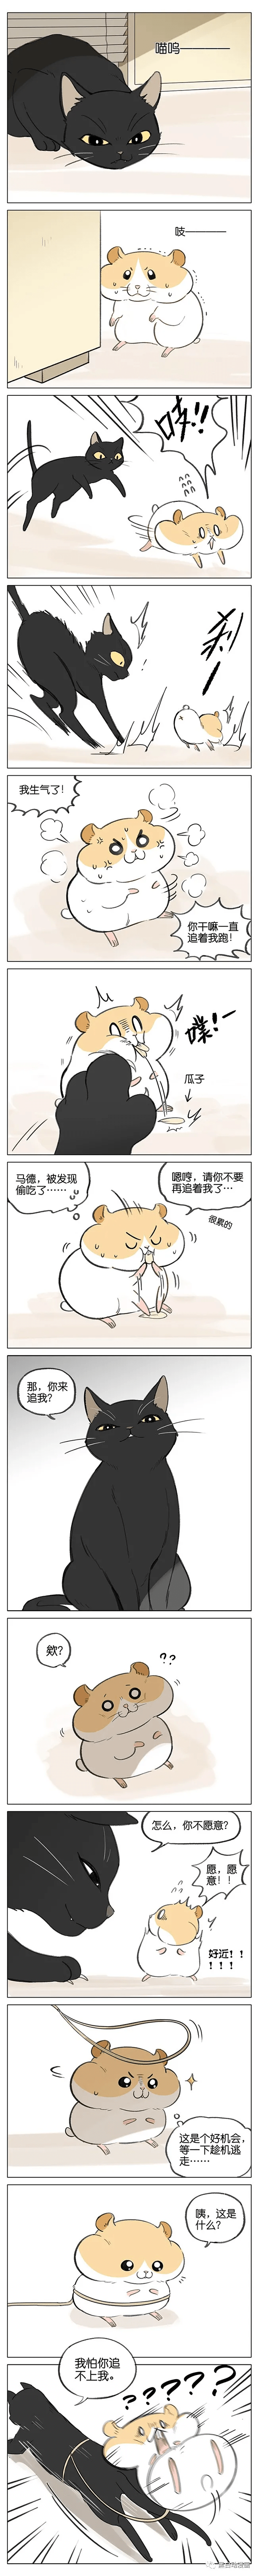 猫和仓鼠间的爱情(漫画)_吉川流_仓鼠_漫画